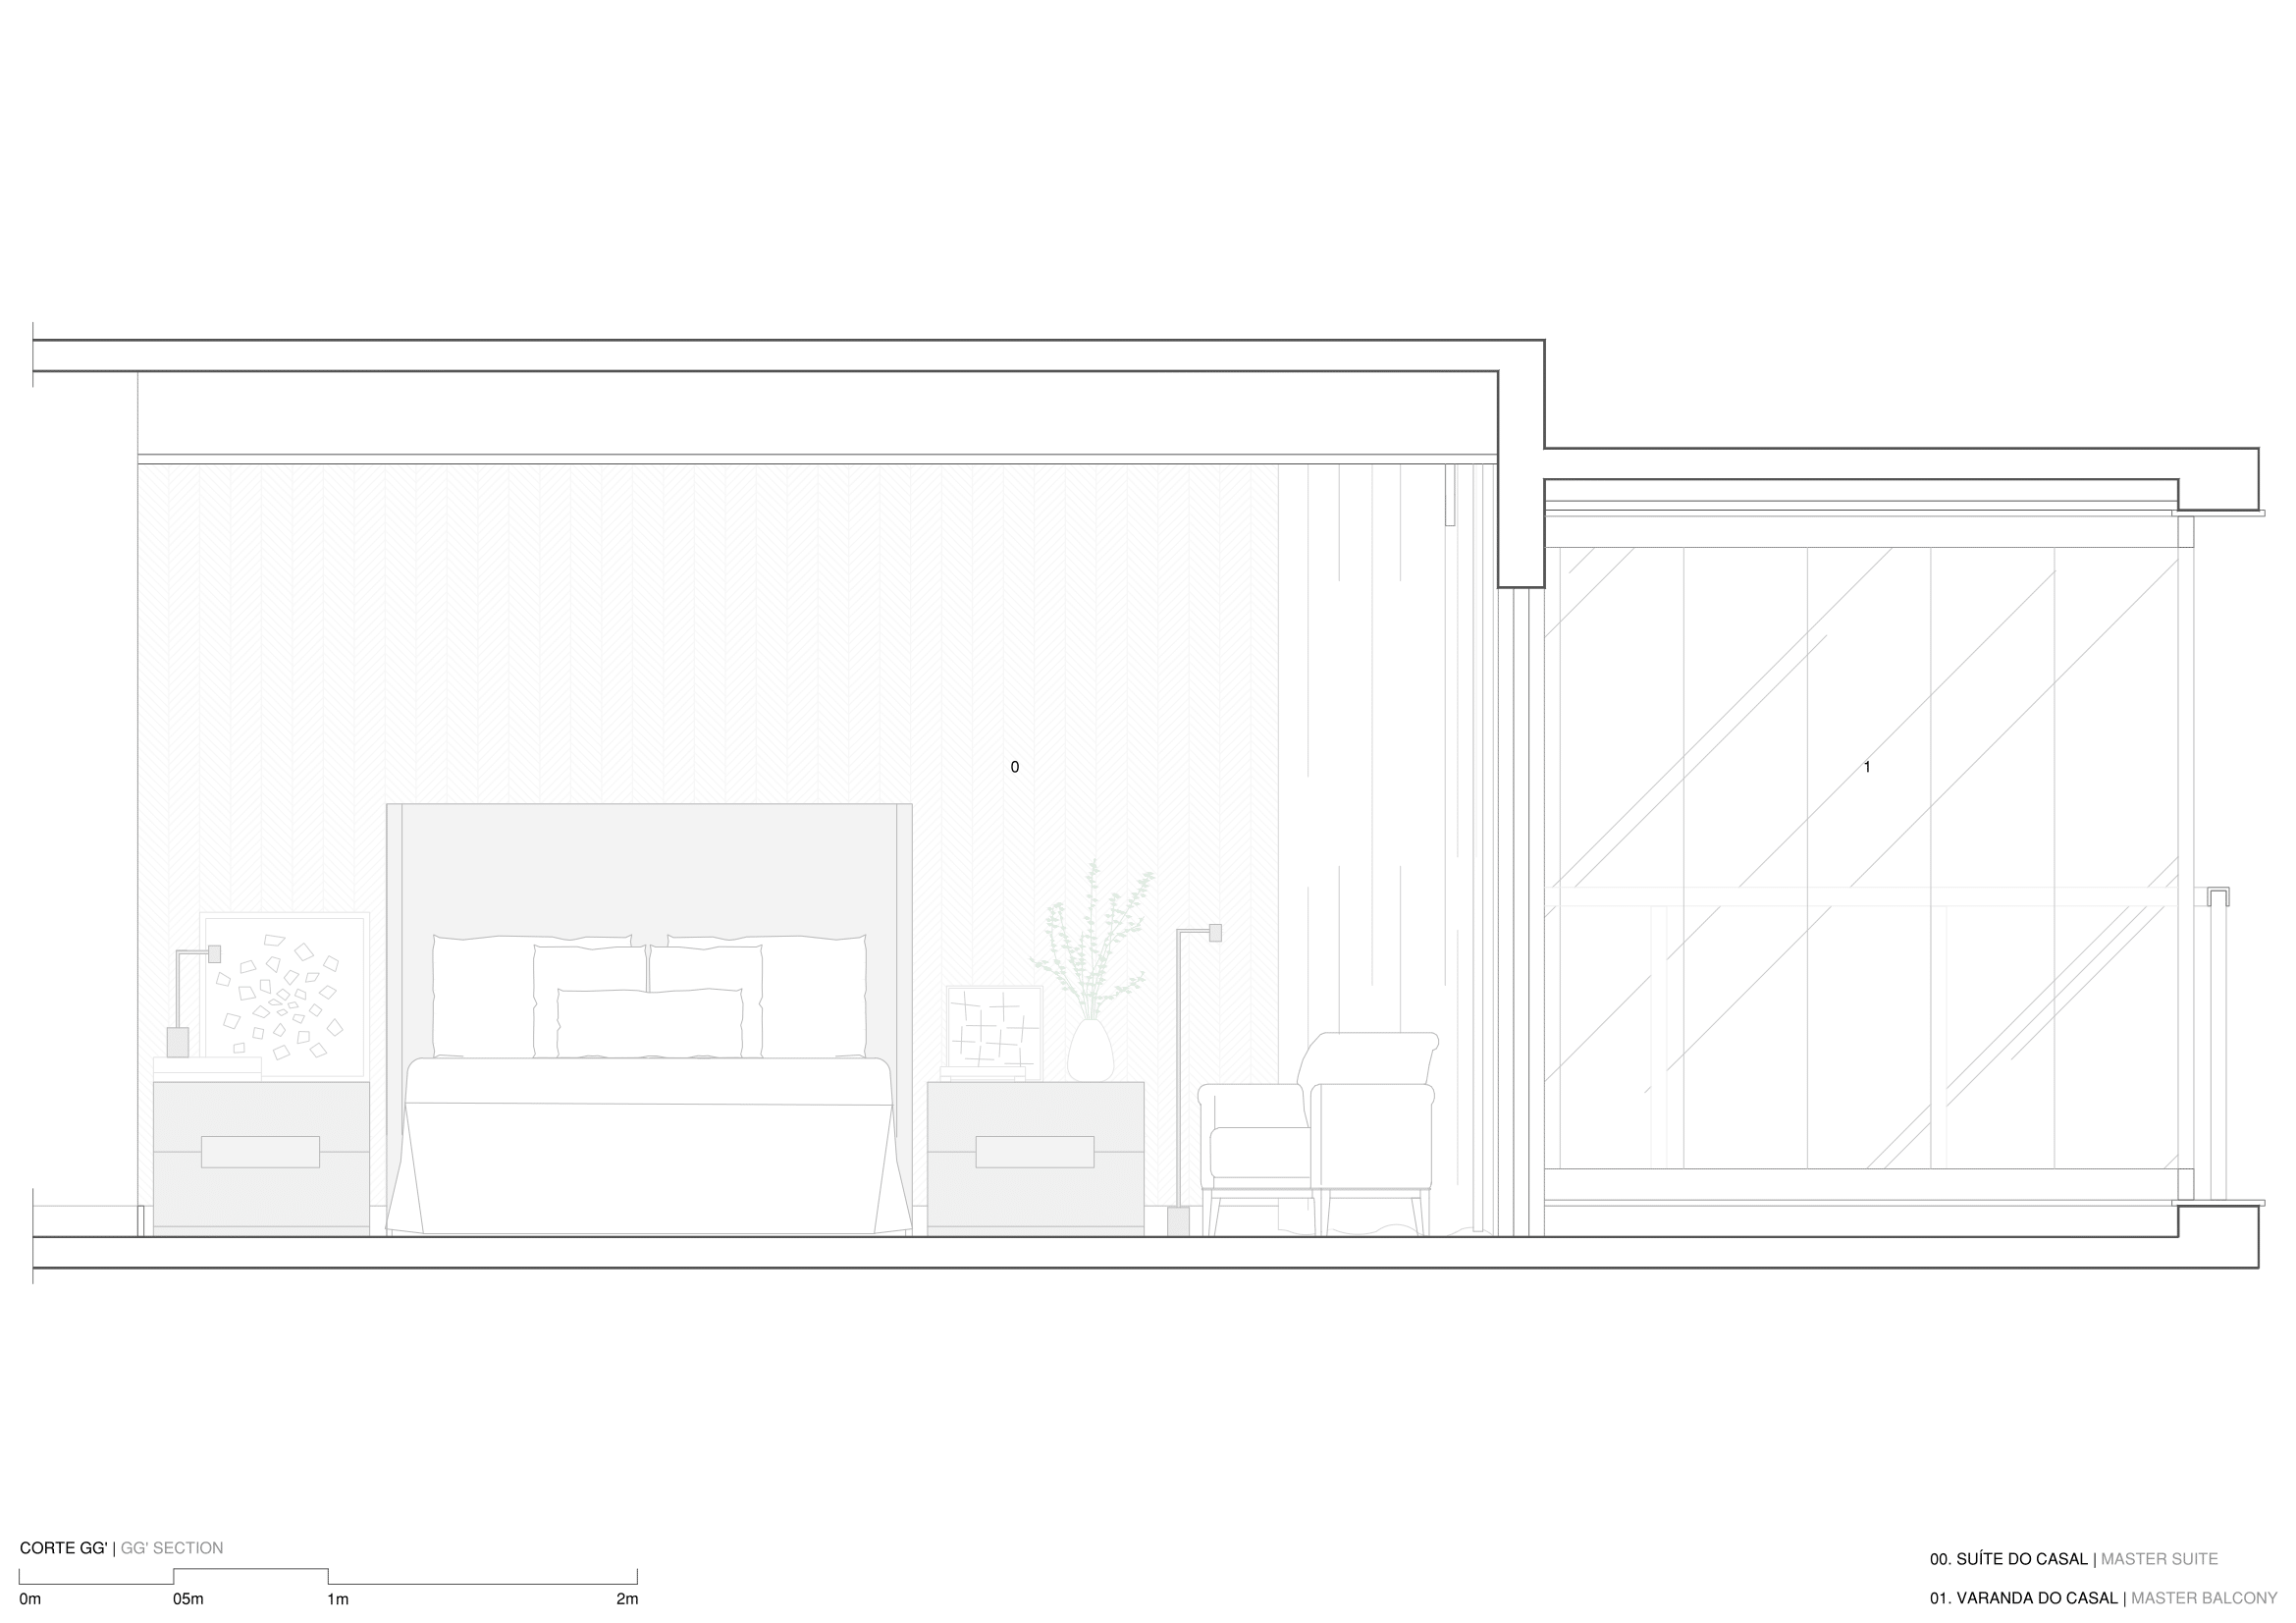 hobjeto-arquitetura-apartamento-ca-ap-08-cortegg